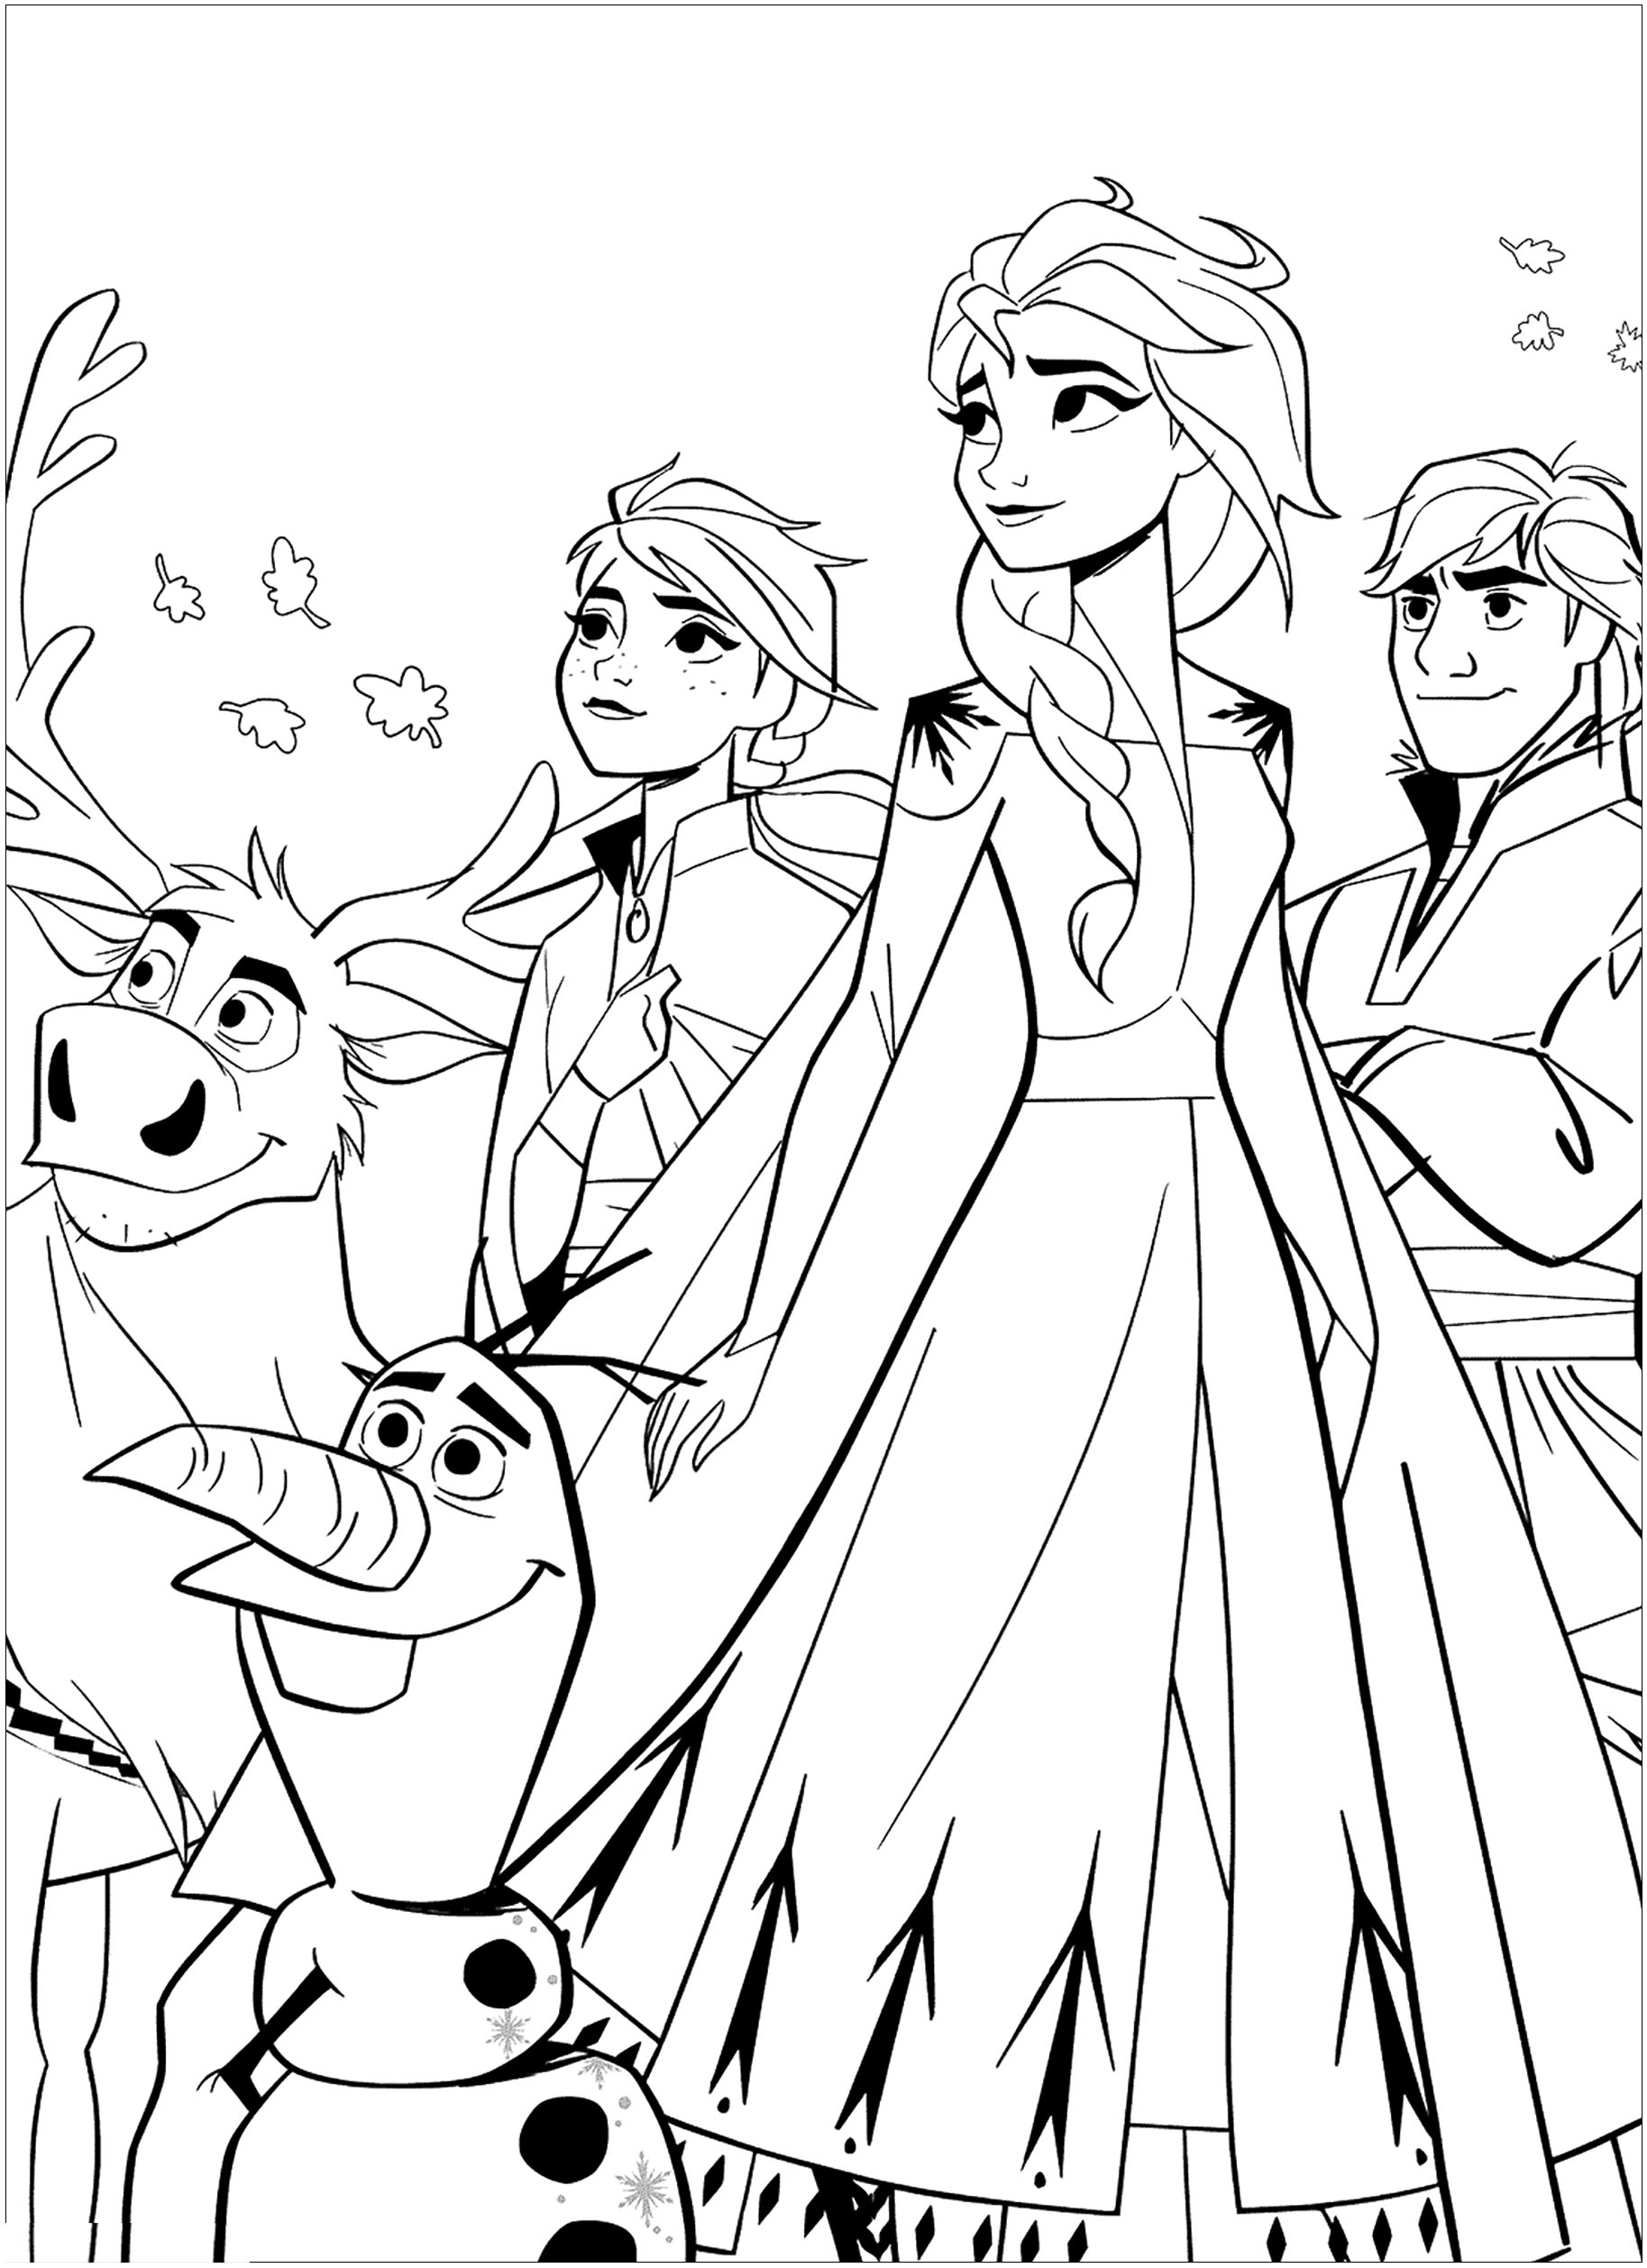 Retrouvez Olaf, Anna, Elsa, Sven et Kristoff dans ce joli coloriage